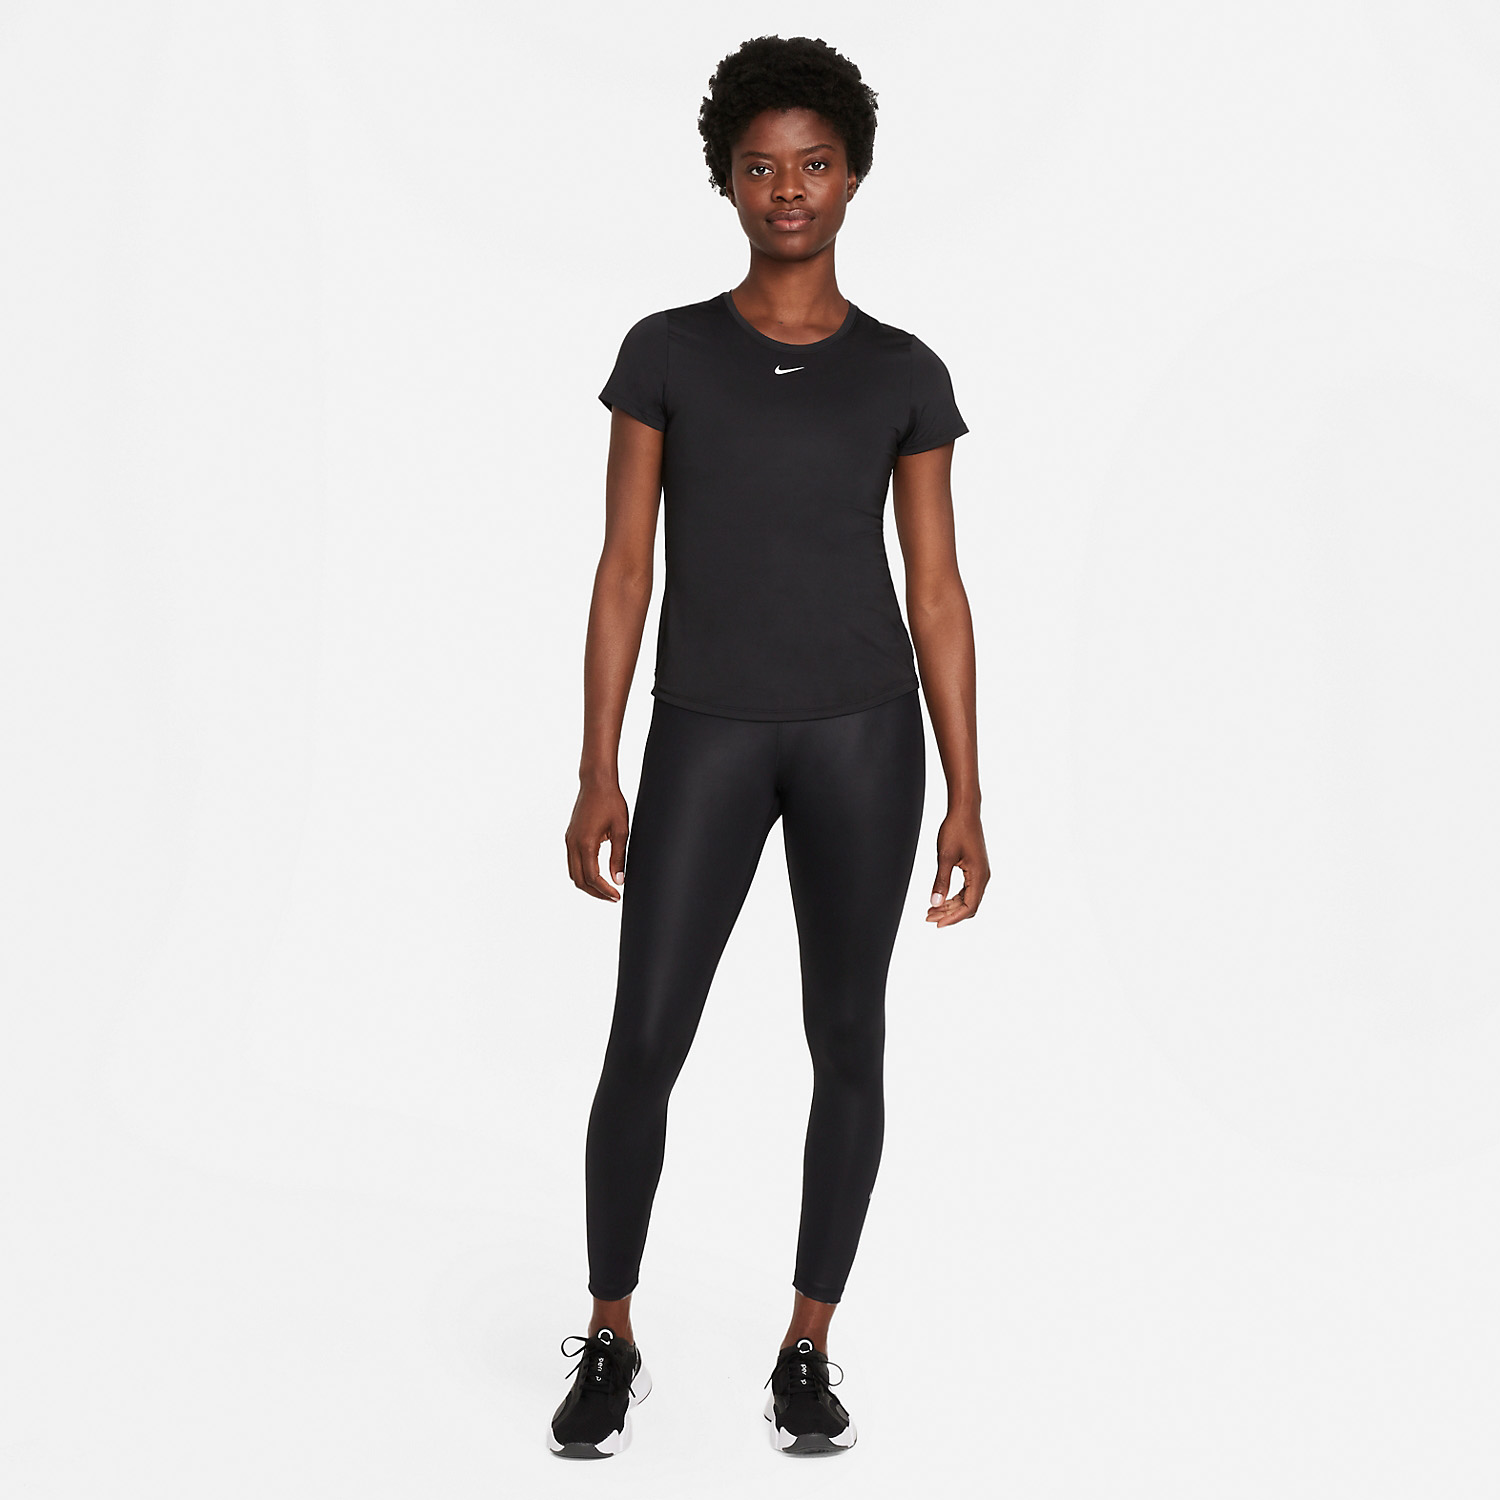 Nike Dri-FIT Performance Women's Padel T-Shirt - Black/White